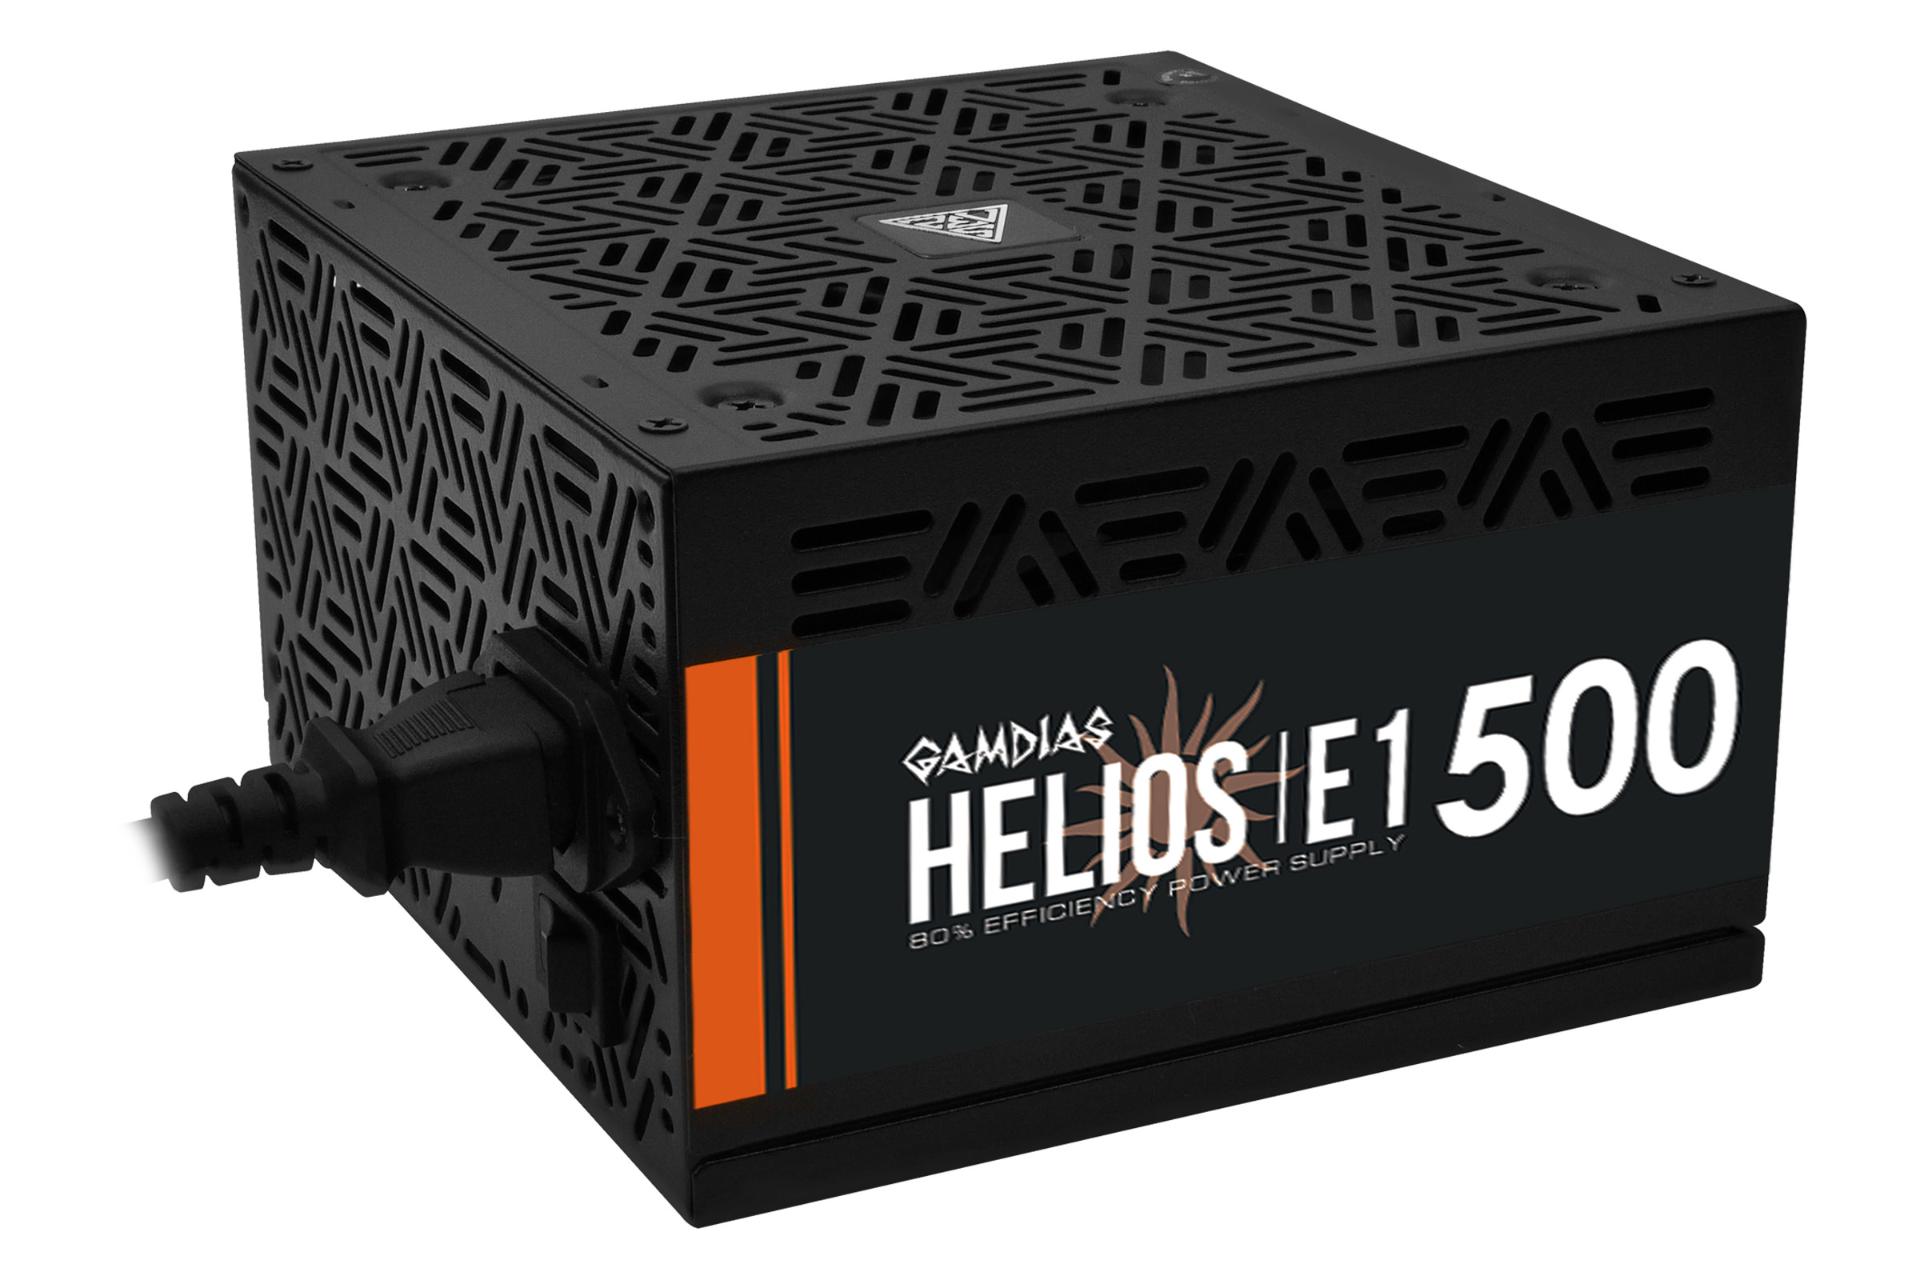 پاور کامپیوتر گیم دیاس HELIOS E1-500 با توان 500 وات